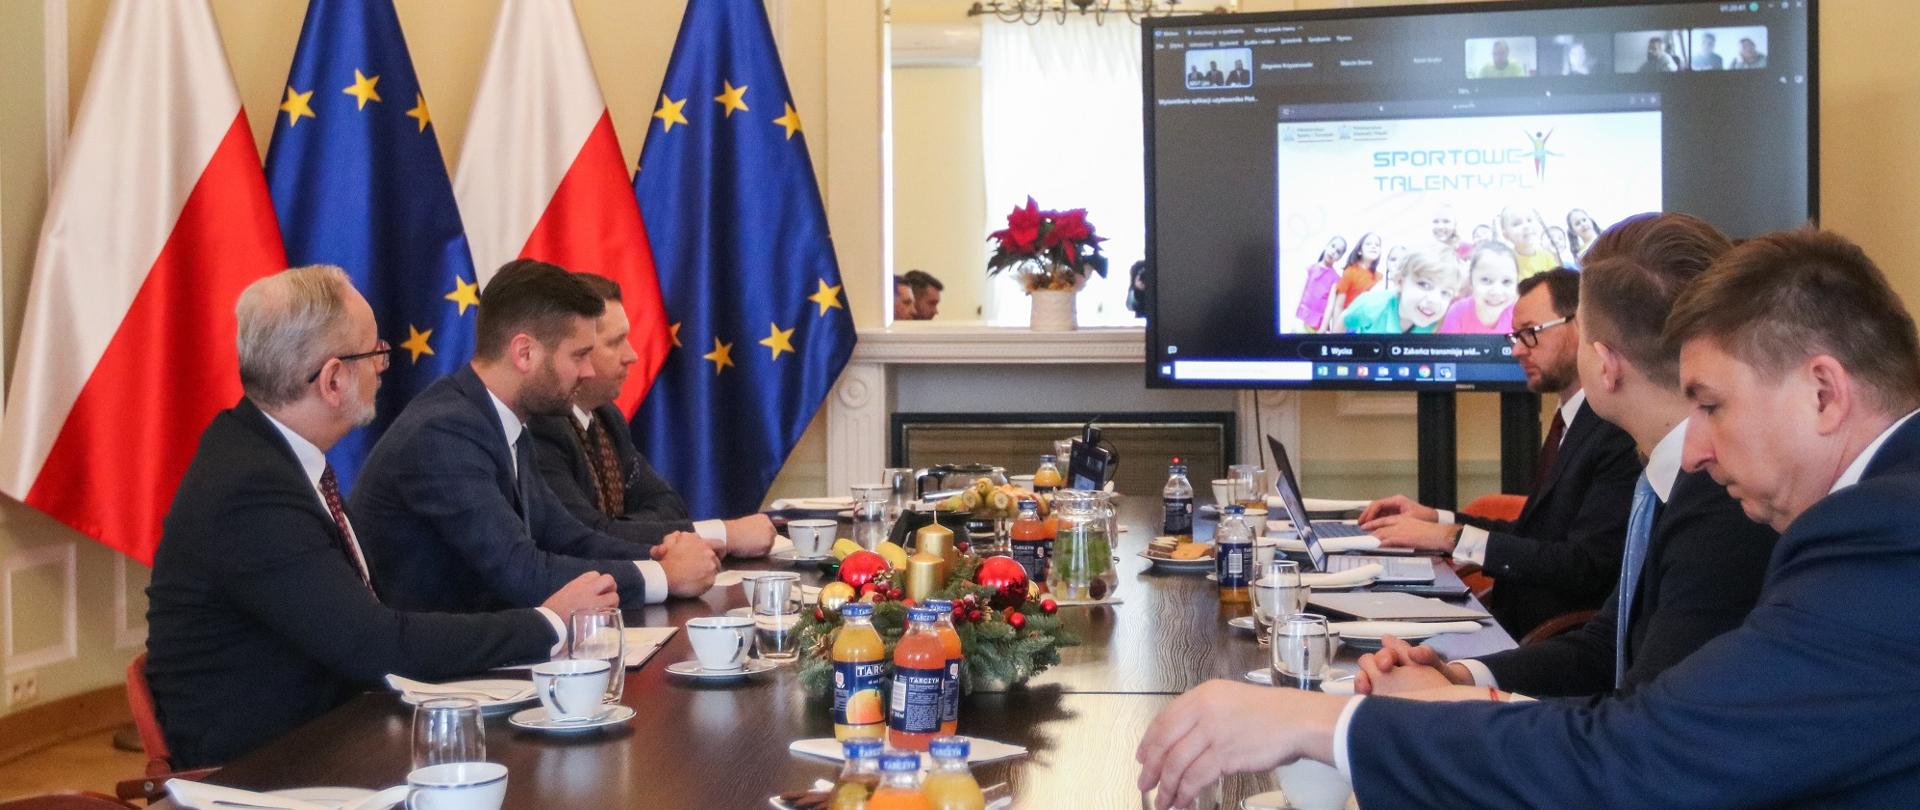 Przy długim stole siedzi kilka osób, za stołem wielki monitor, z drugiej strony flagi Polski i UE.